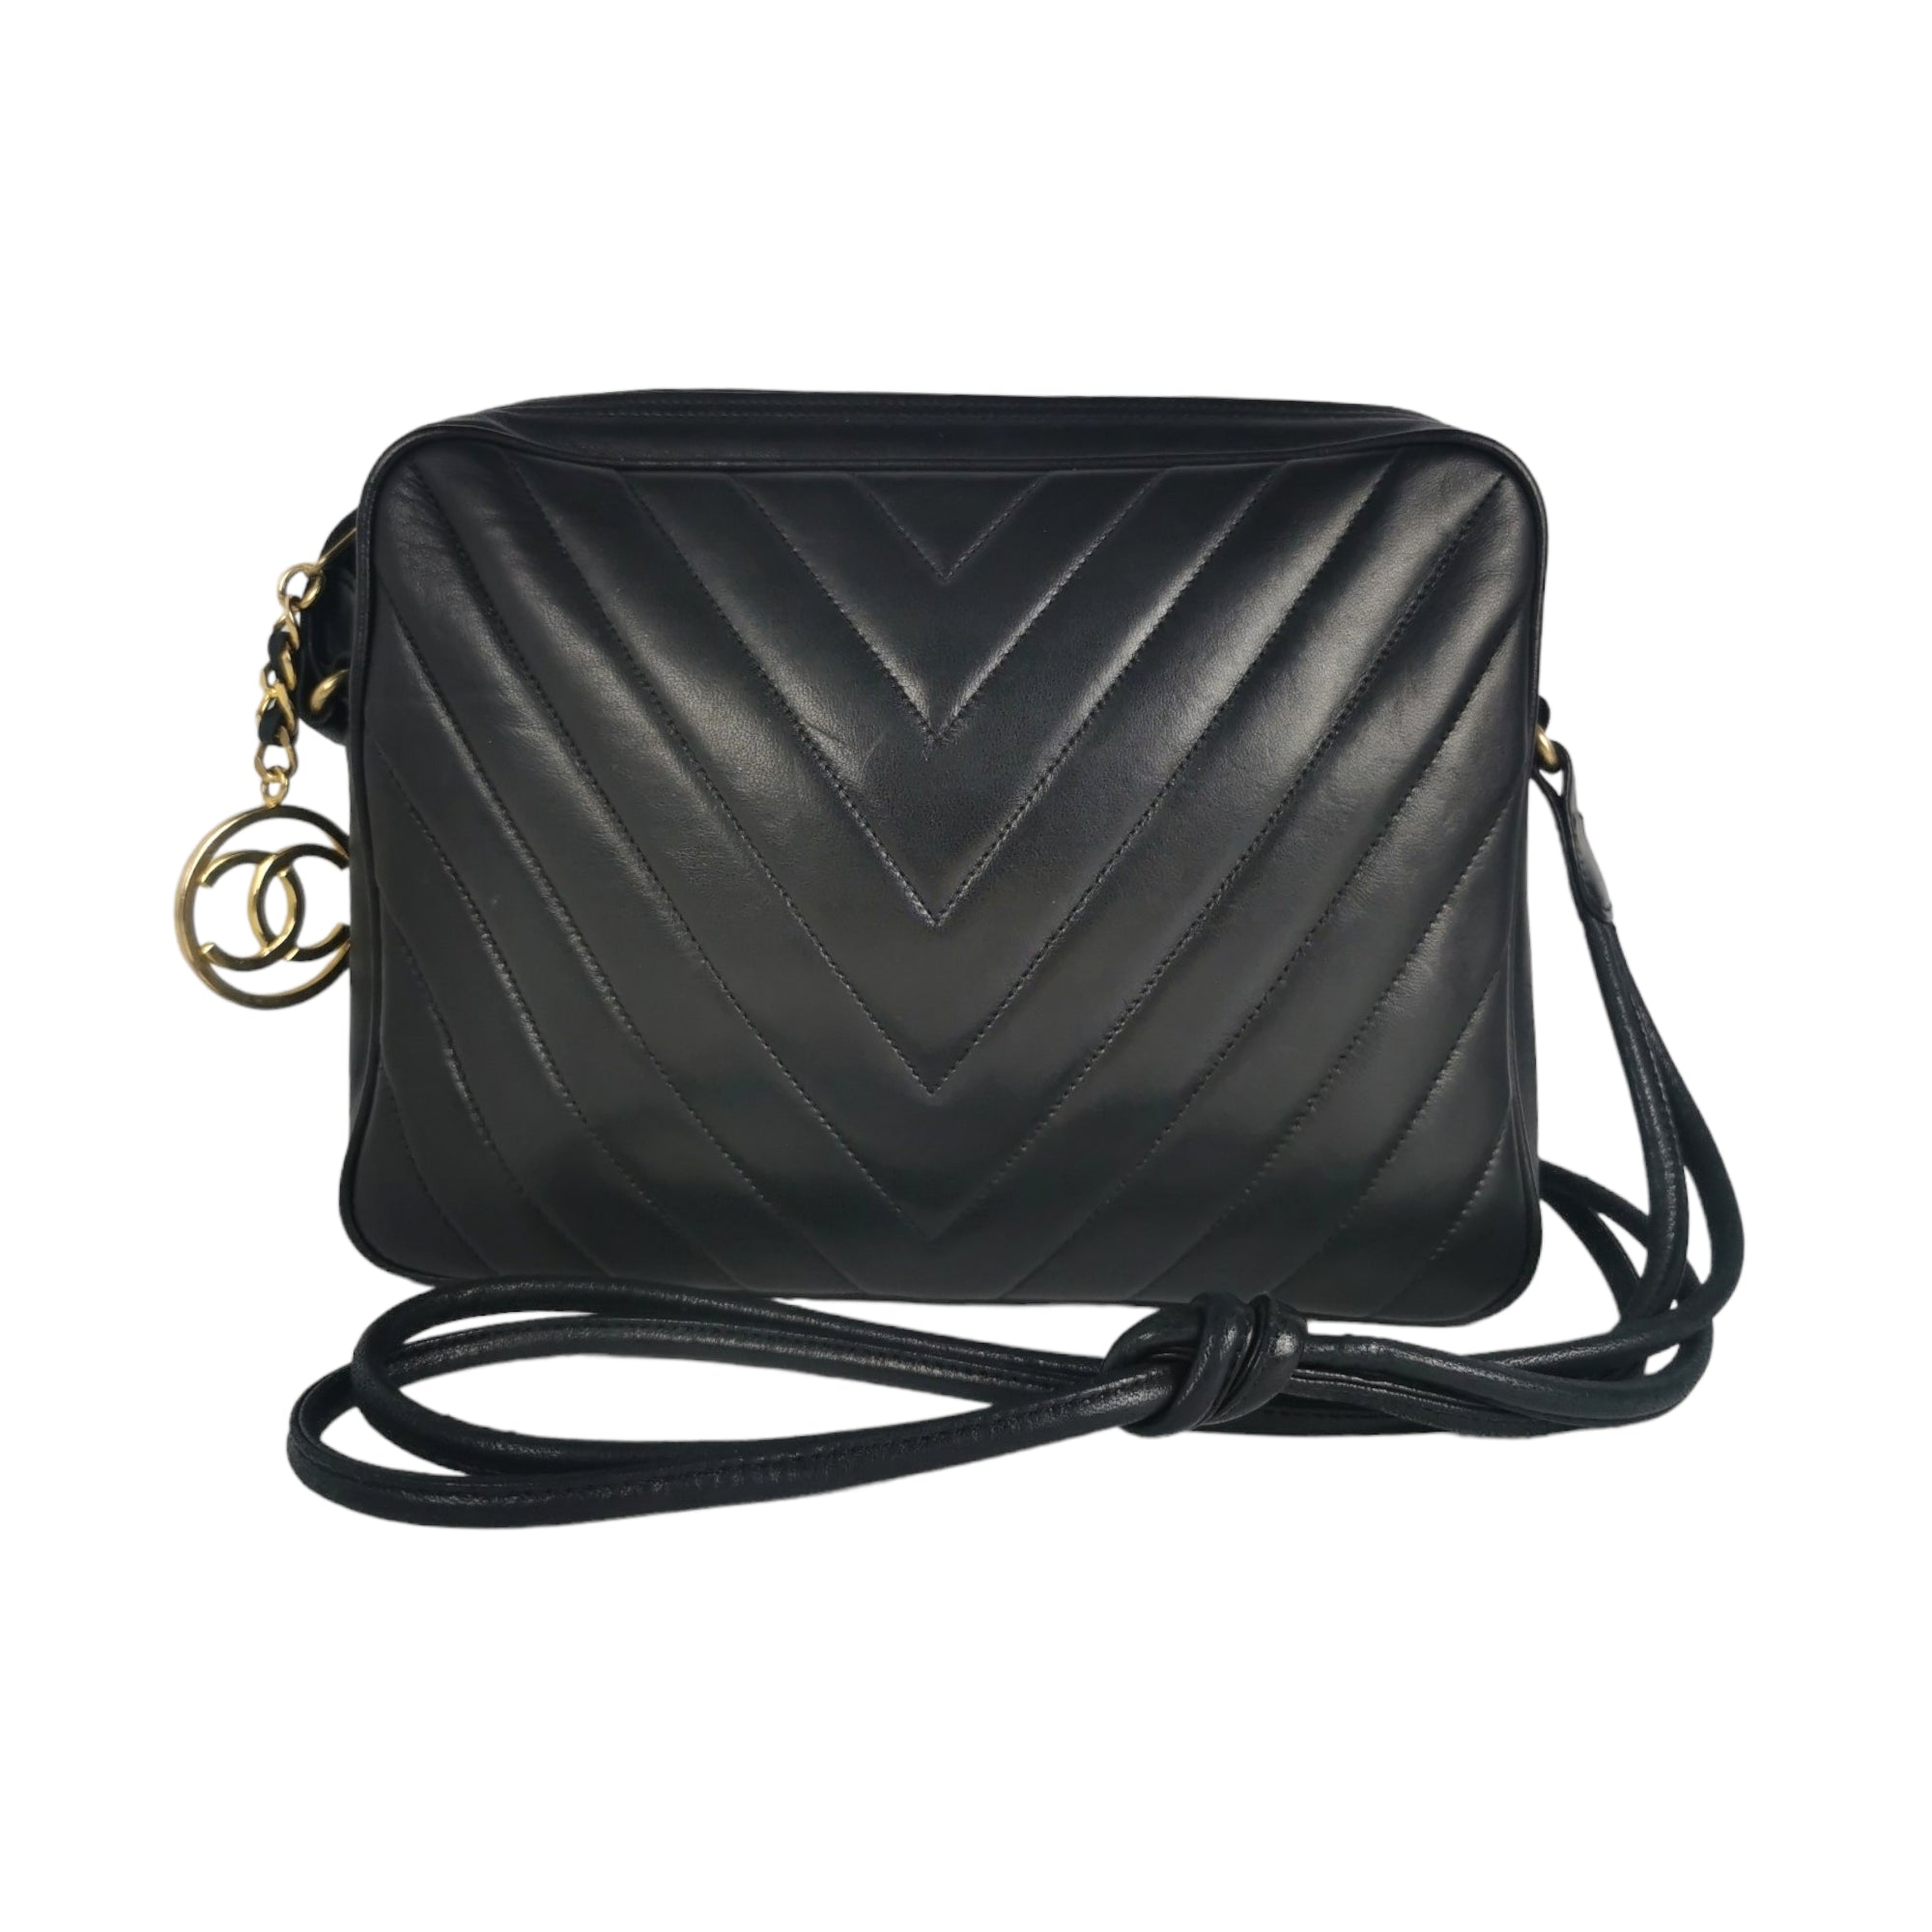 Vintage CHANEL black lamb leather large, jumbo size shoulder bag